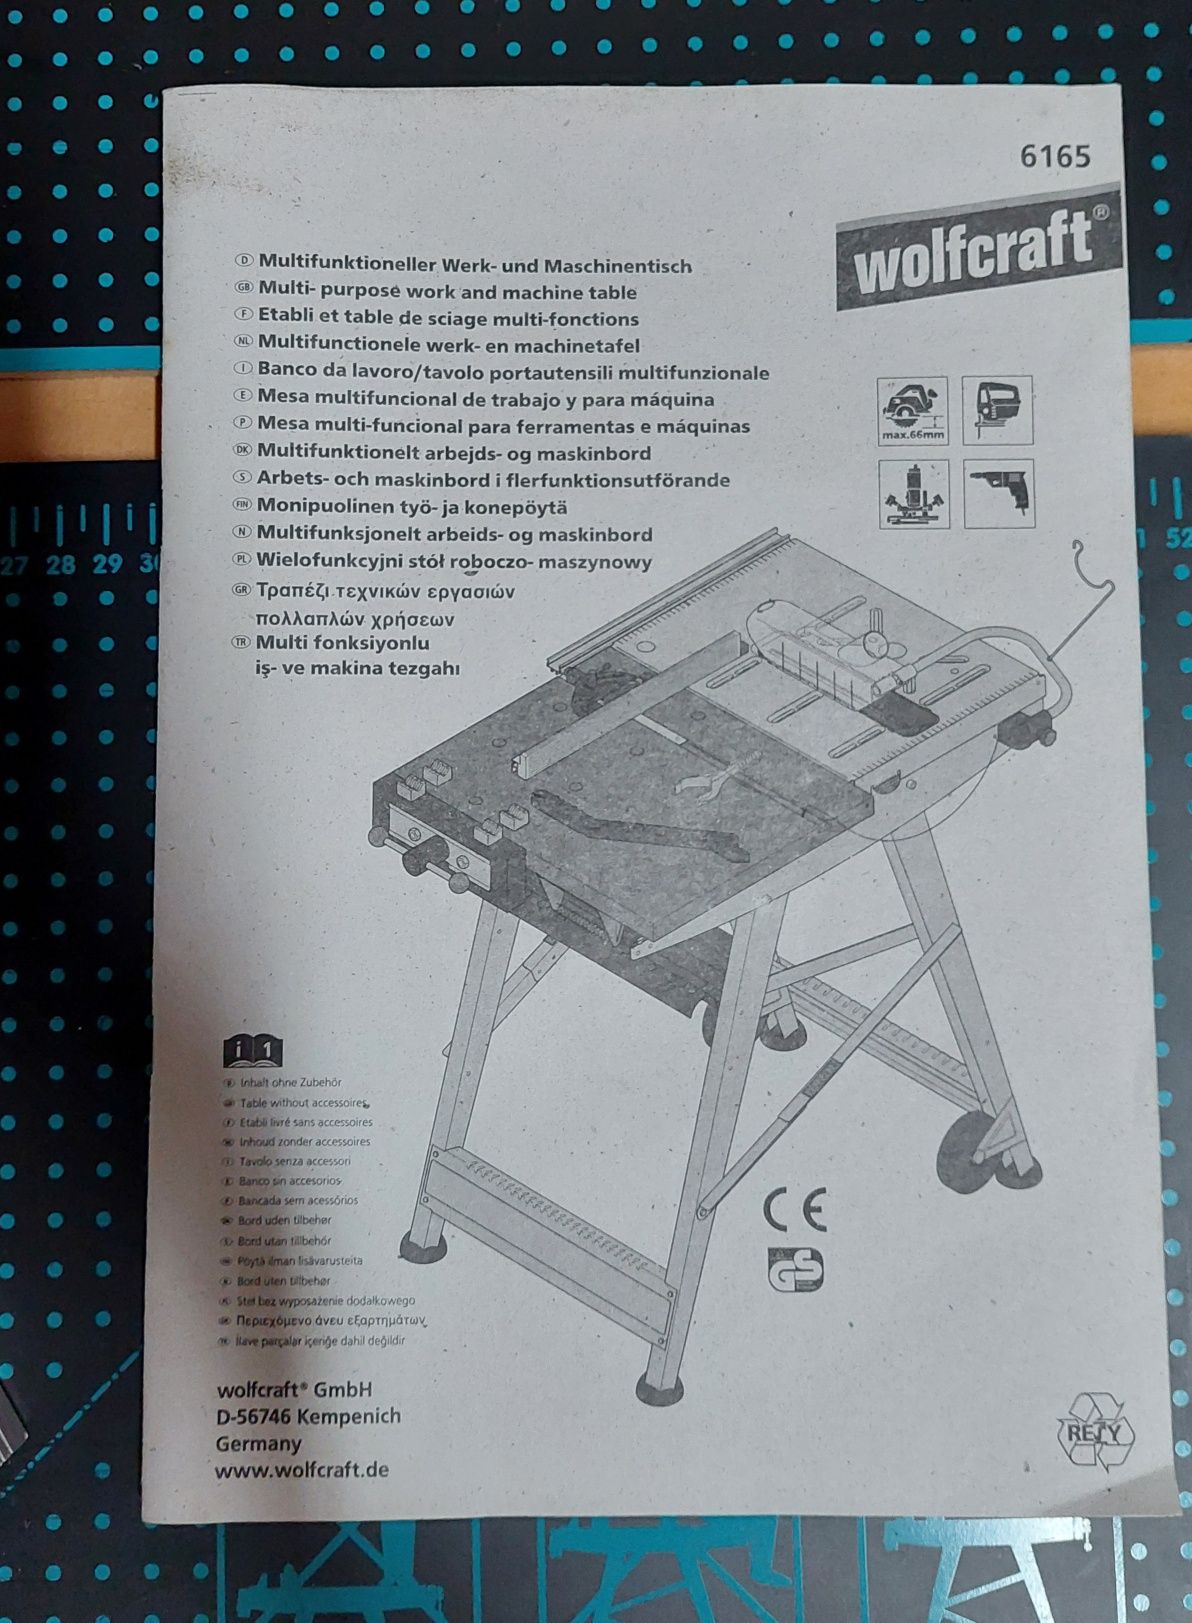 Wielofunkcyjny stol roboczo maszynowy wolfcraft